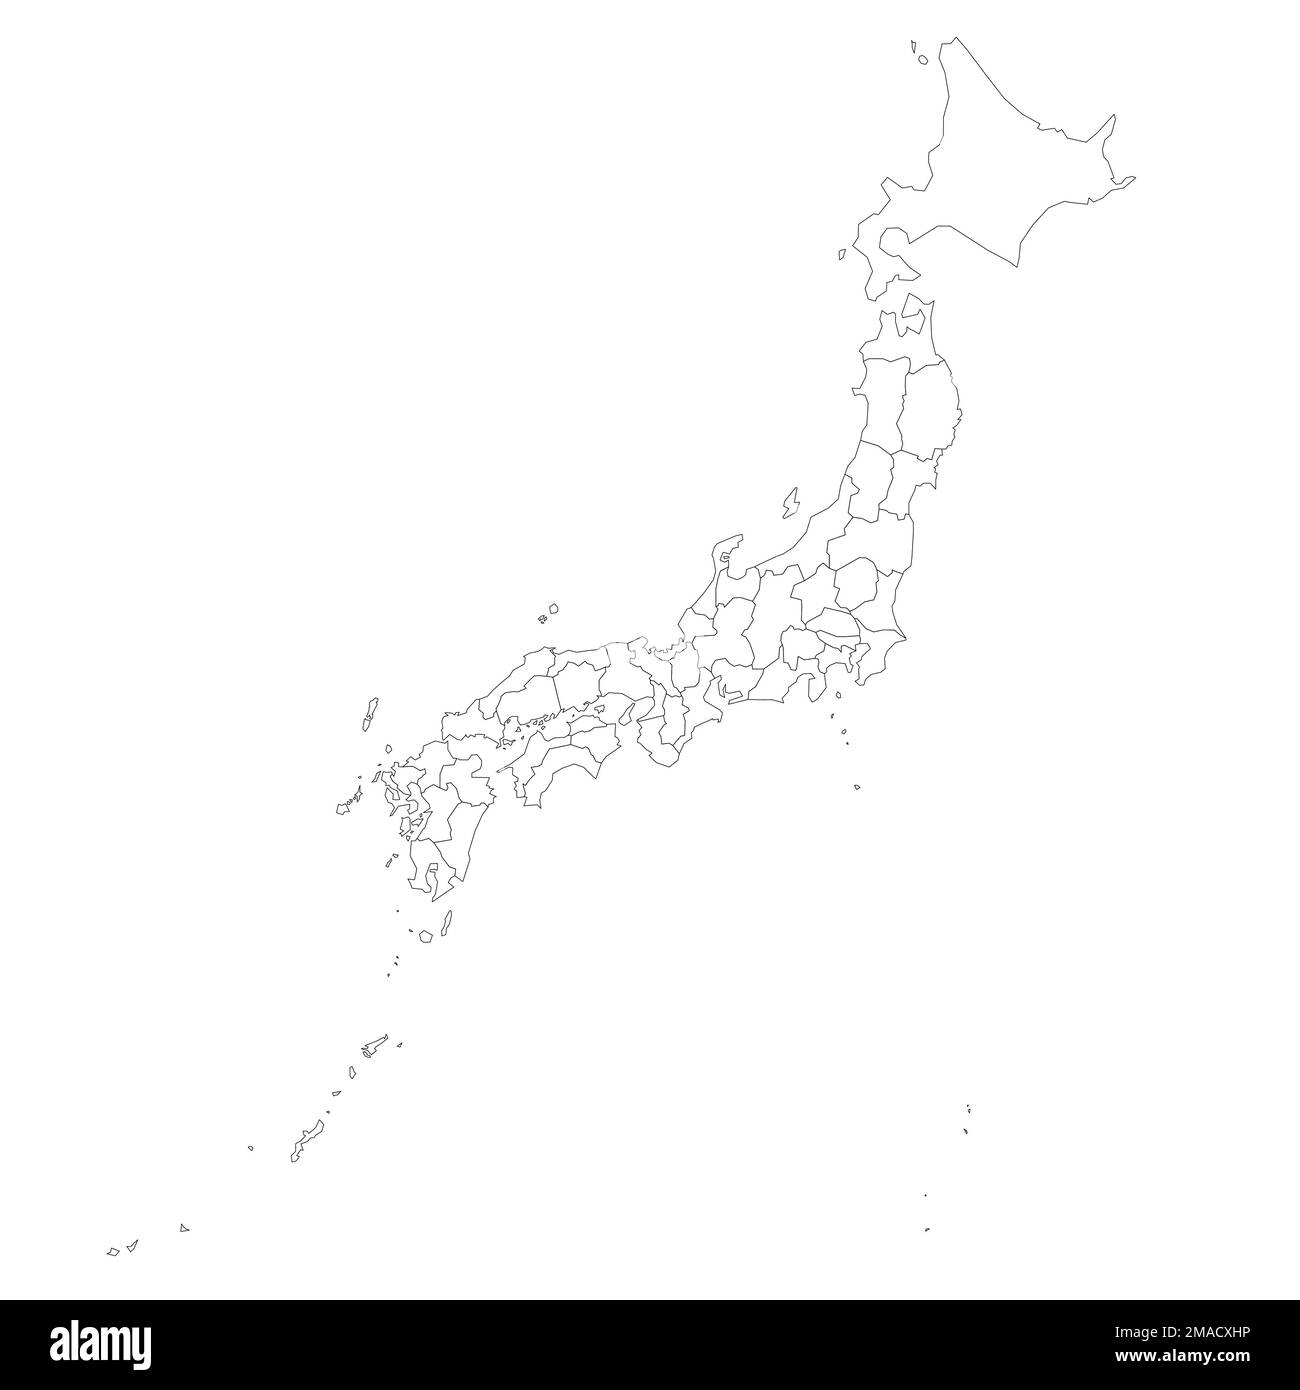 Politische Karte der Verwaltungseinheiten Japans - Präfekturen, Metropilis Tokio, Territorium Hokaido und städtische Präfekturen Kyoto und Osaka. Ein leeres Outlin Stock Vektor